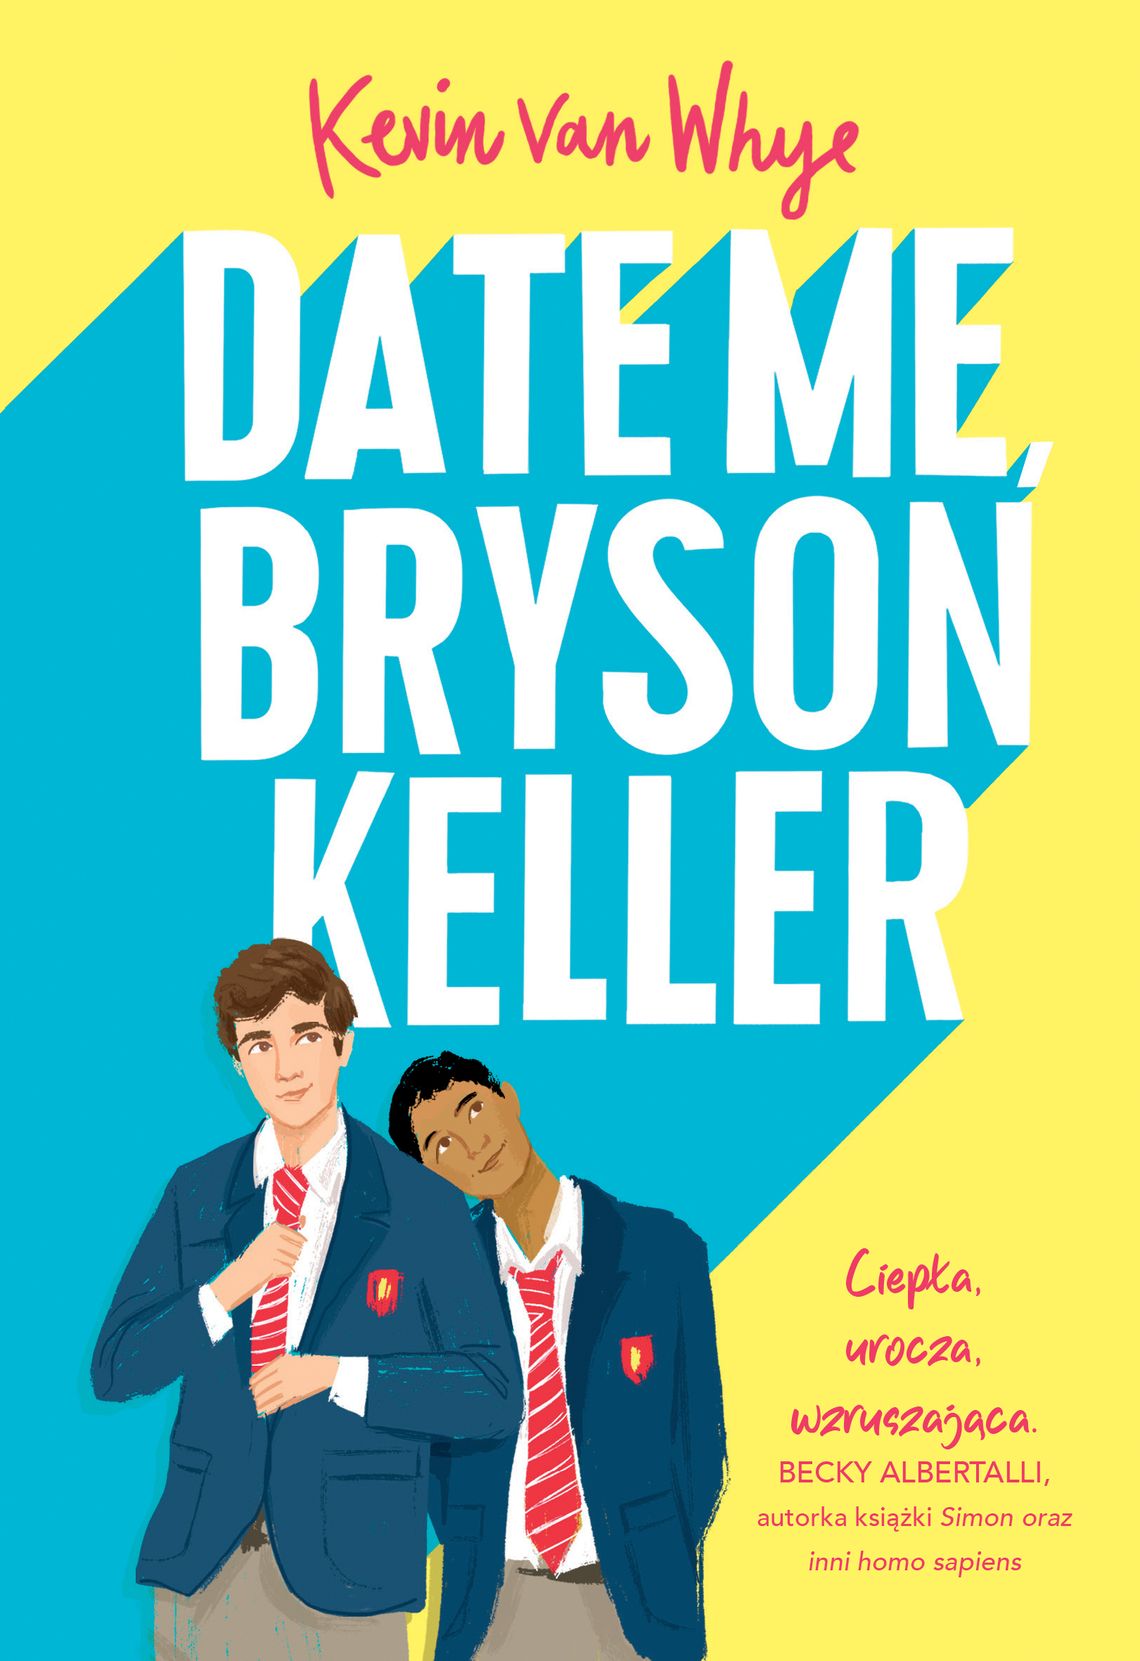 "Date Me, Bryson Keller" - Kevin van Whye